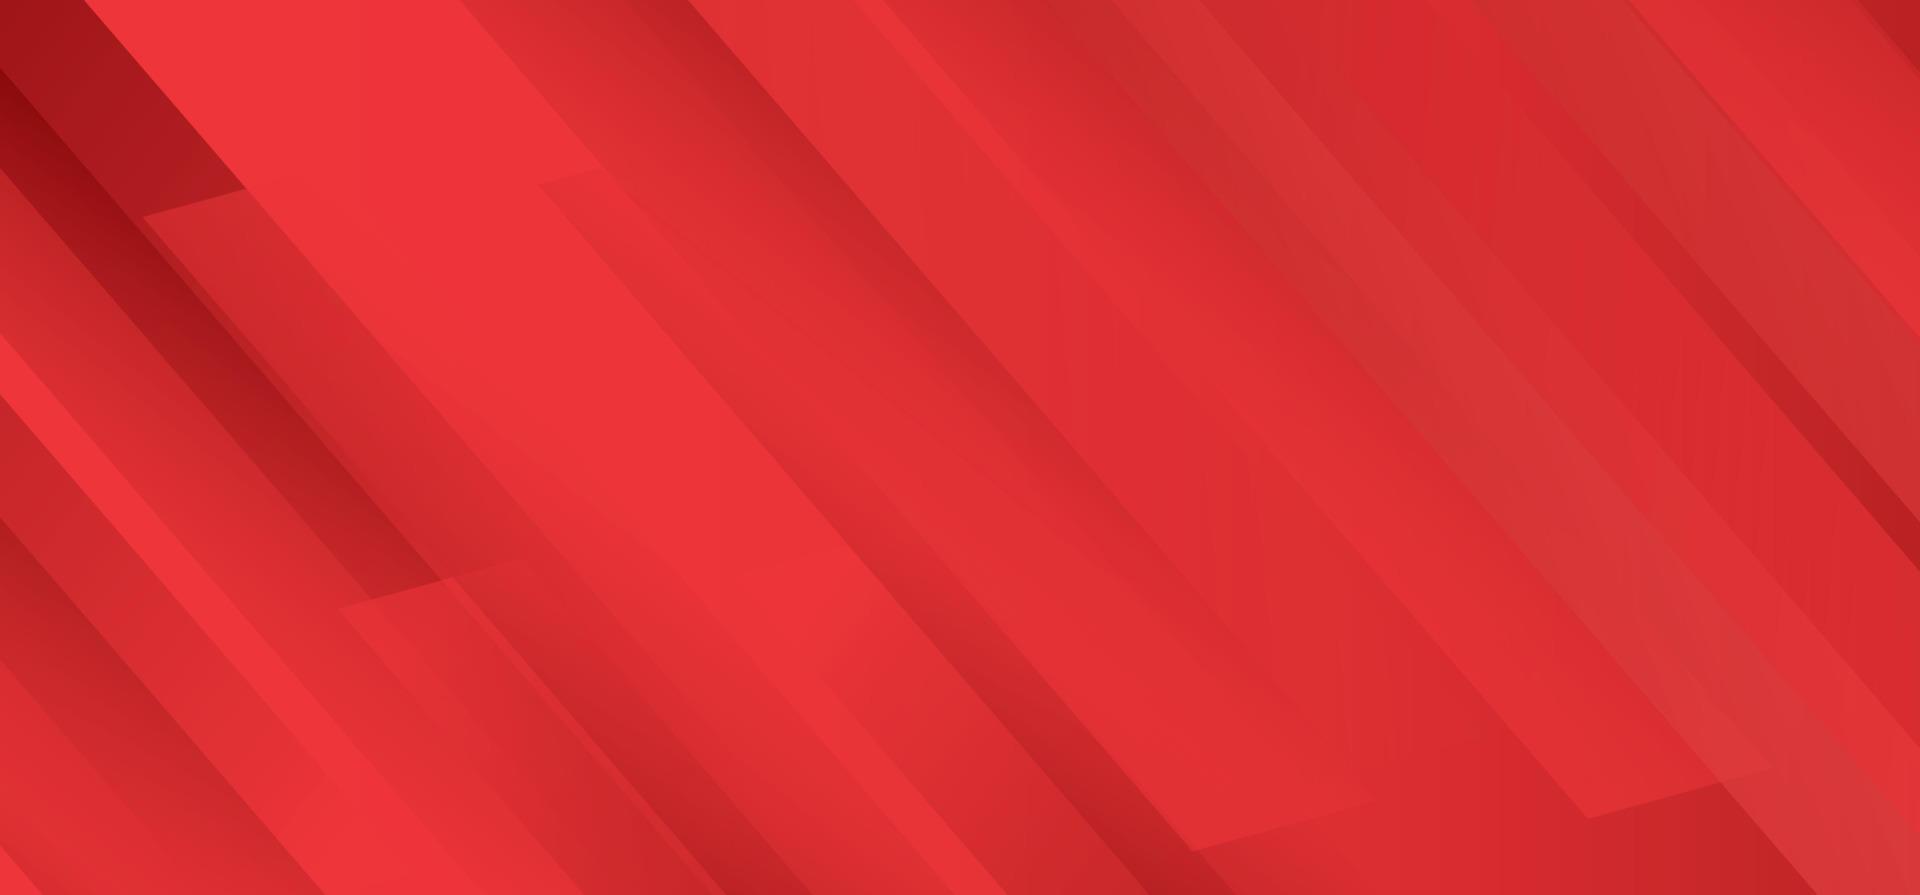 sfondo astratto rosso grafico futuristico moderno hipster. sfondo giallo con strisce. disegno di struttura del fondo astratto di vettore, vettore